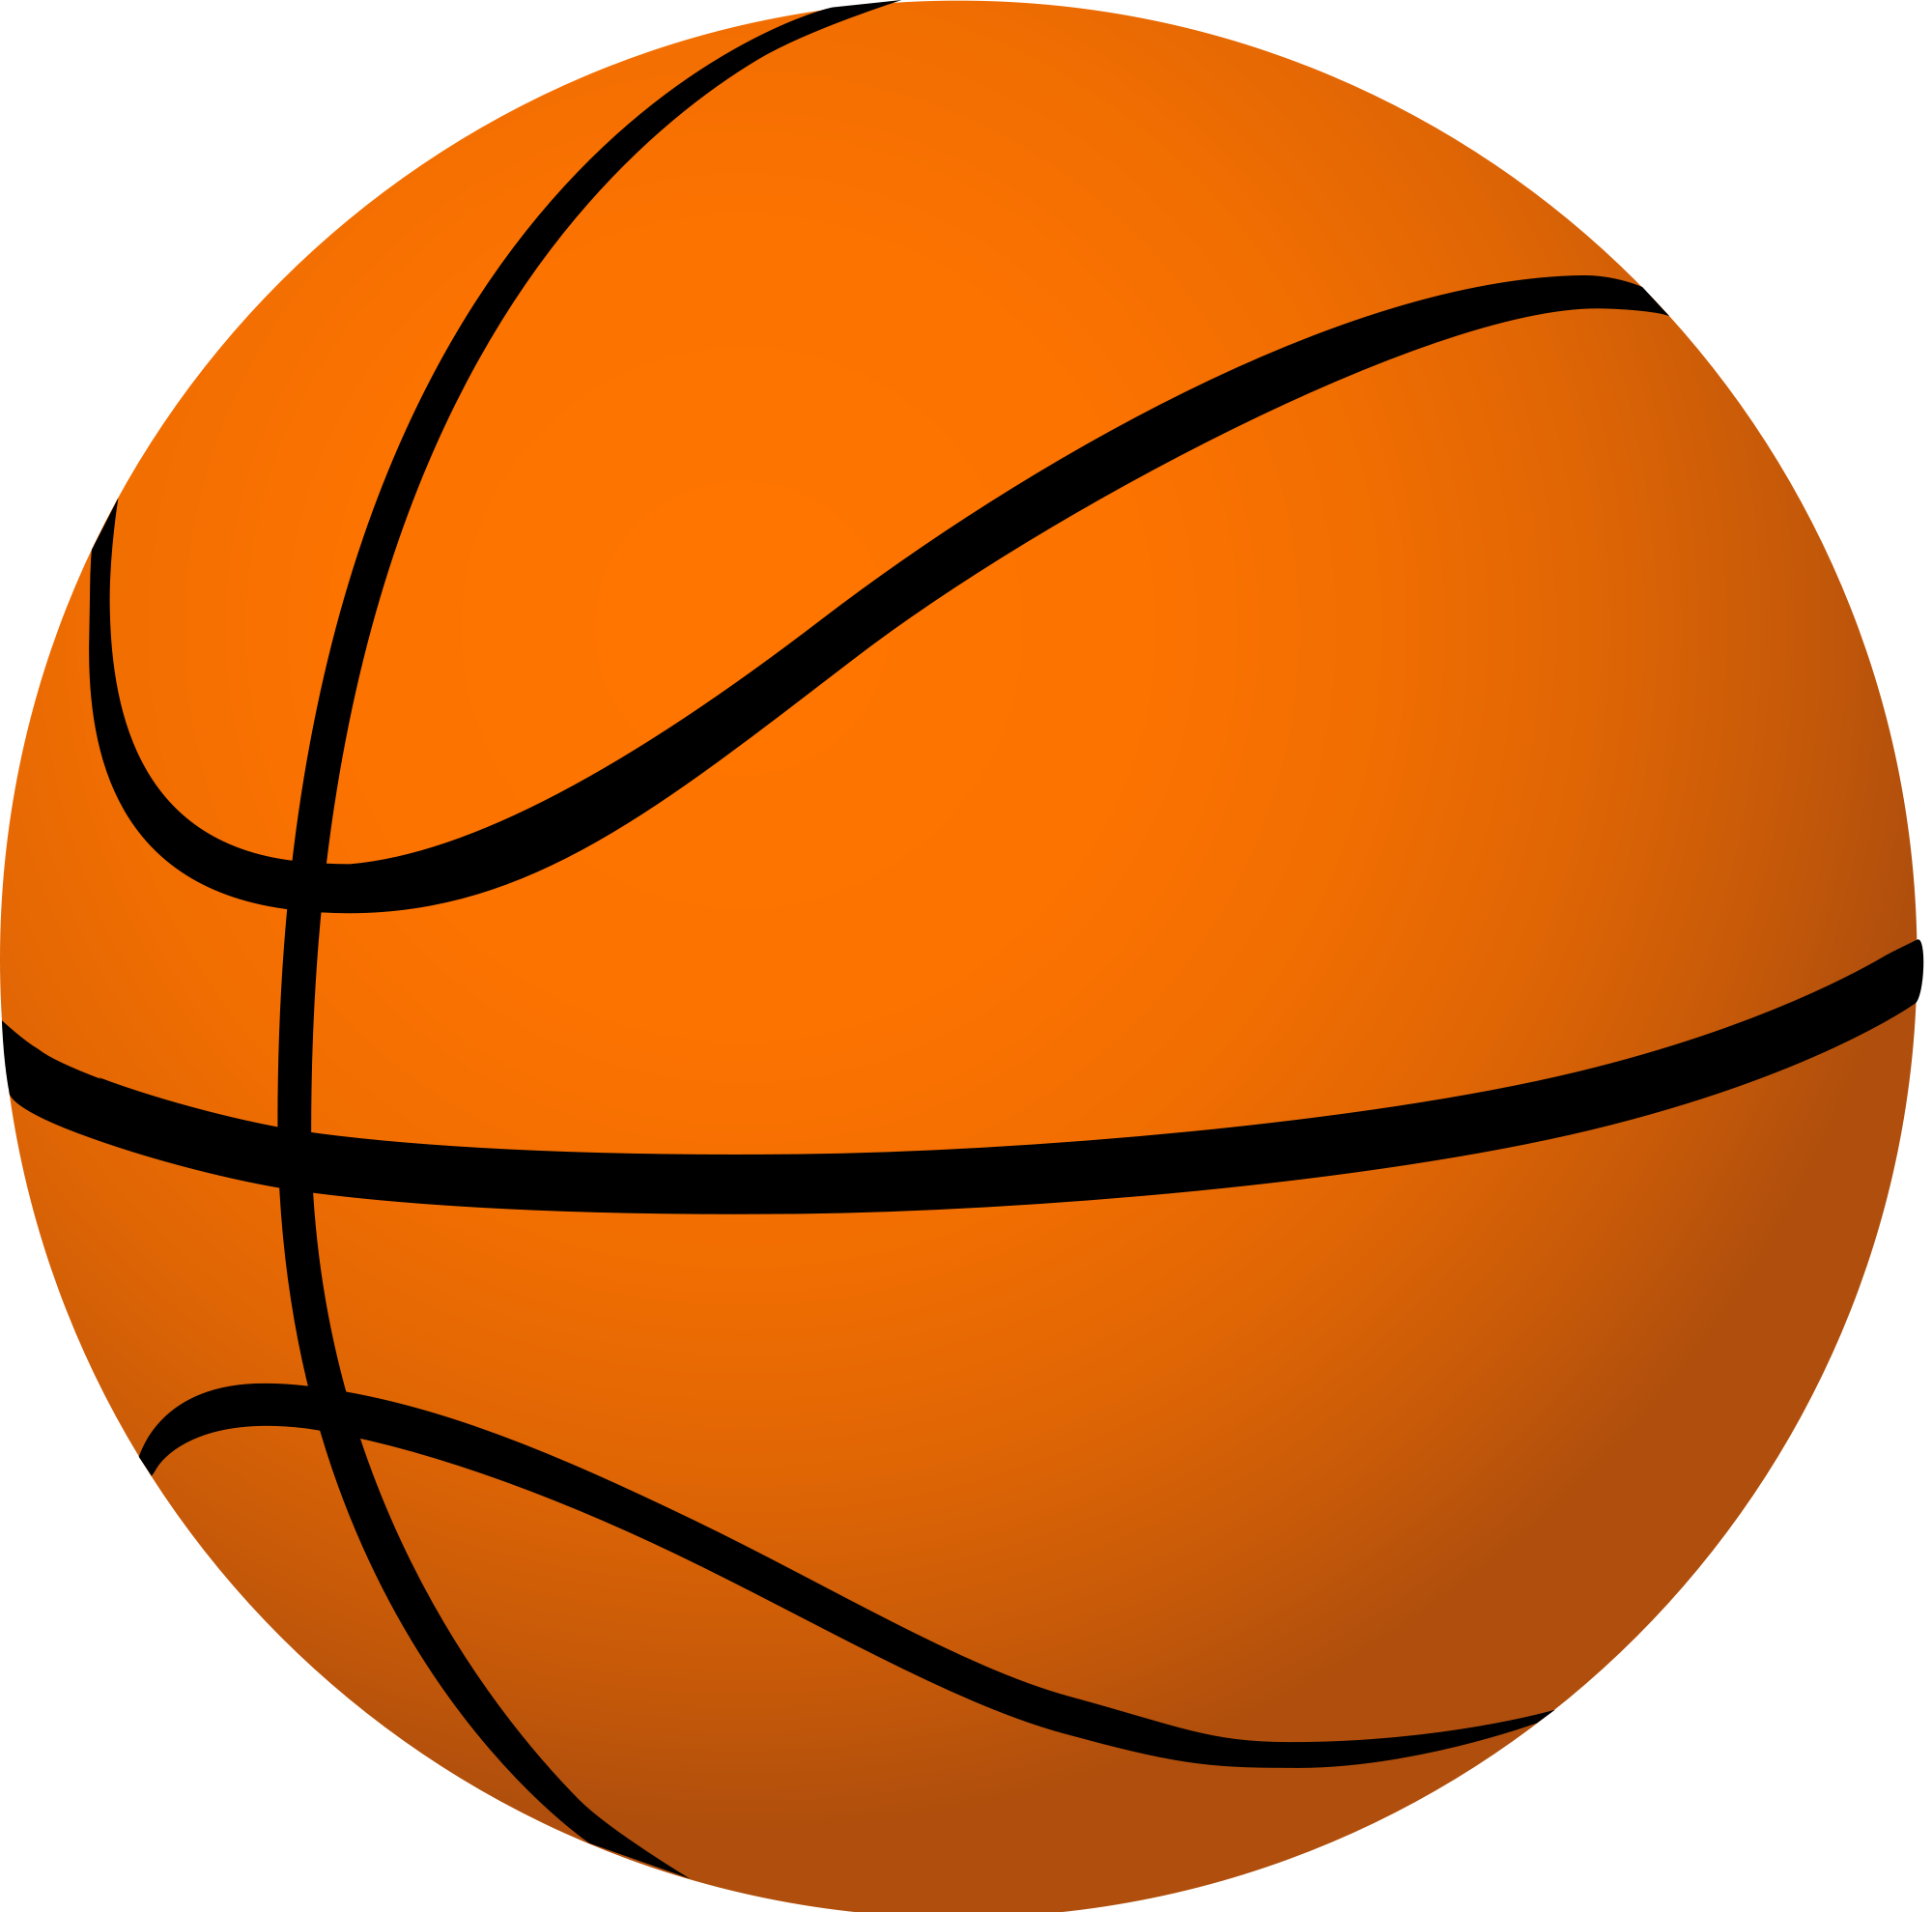 Basketball Hoop with Basketba